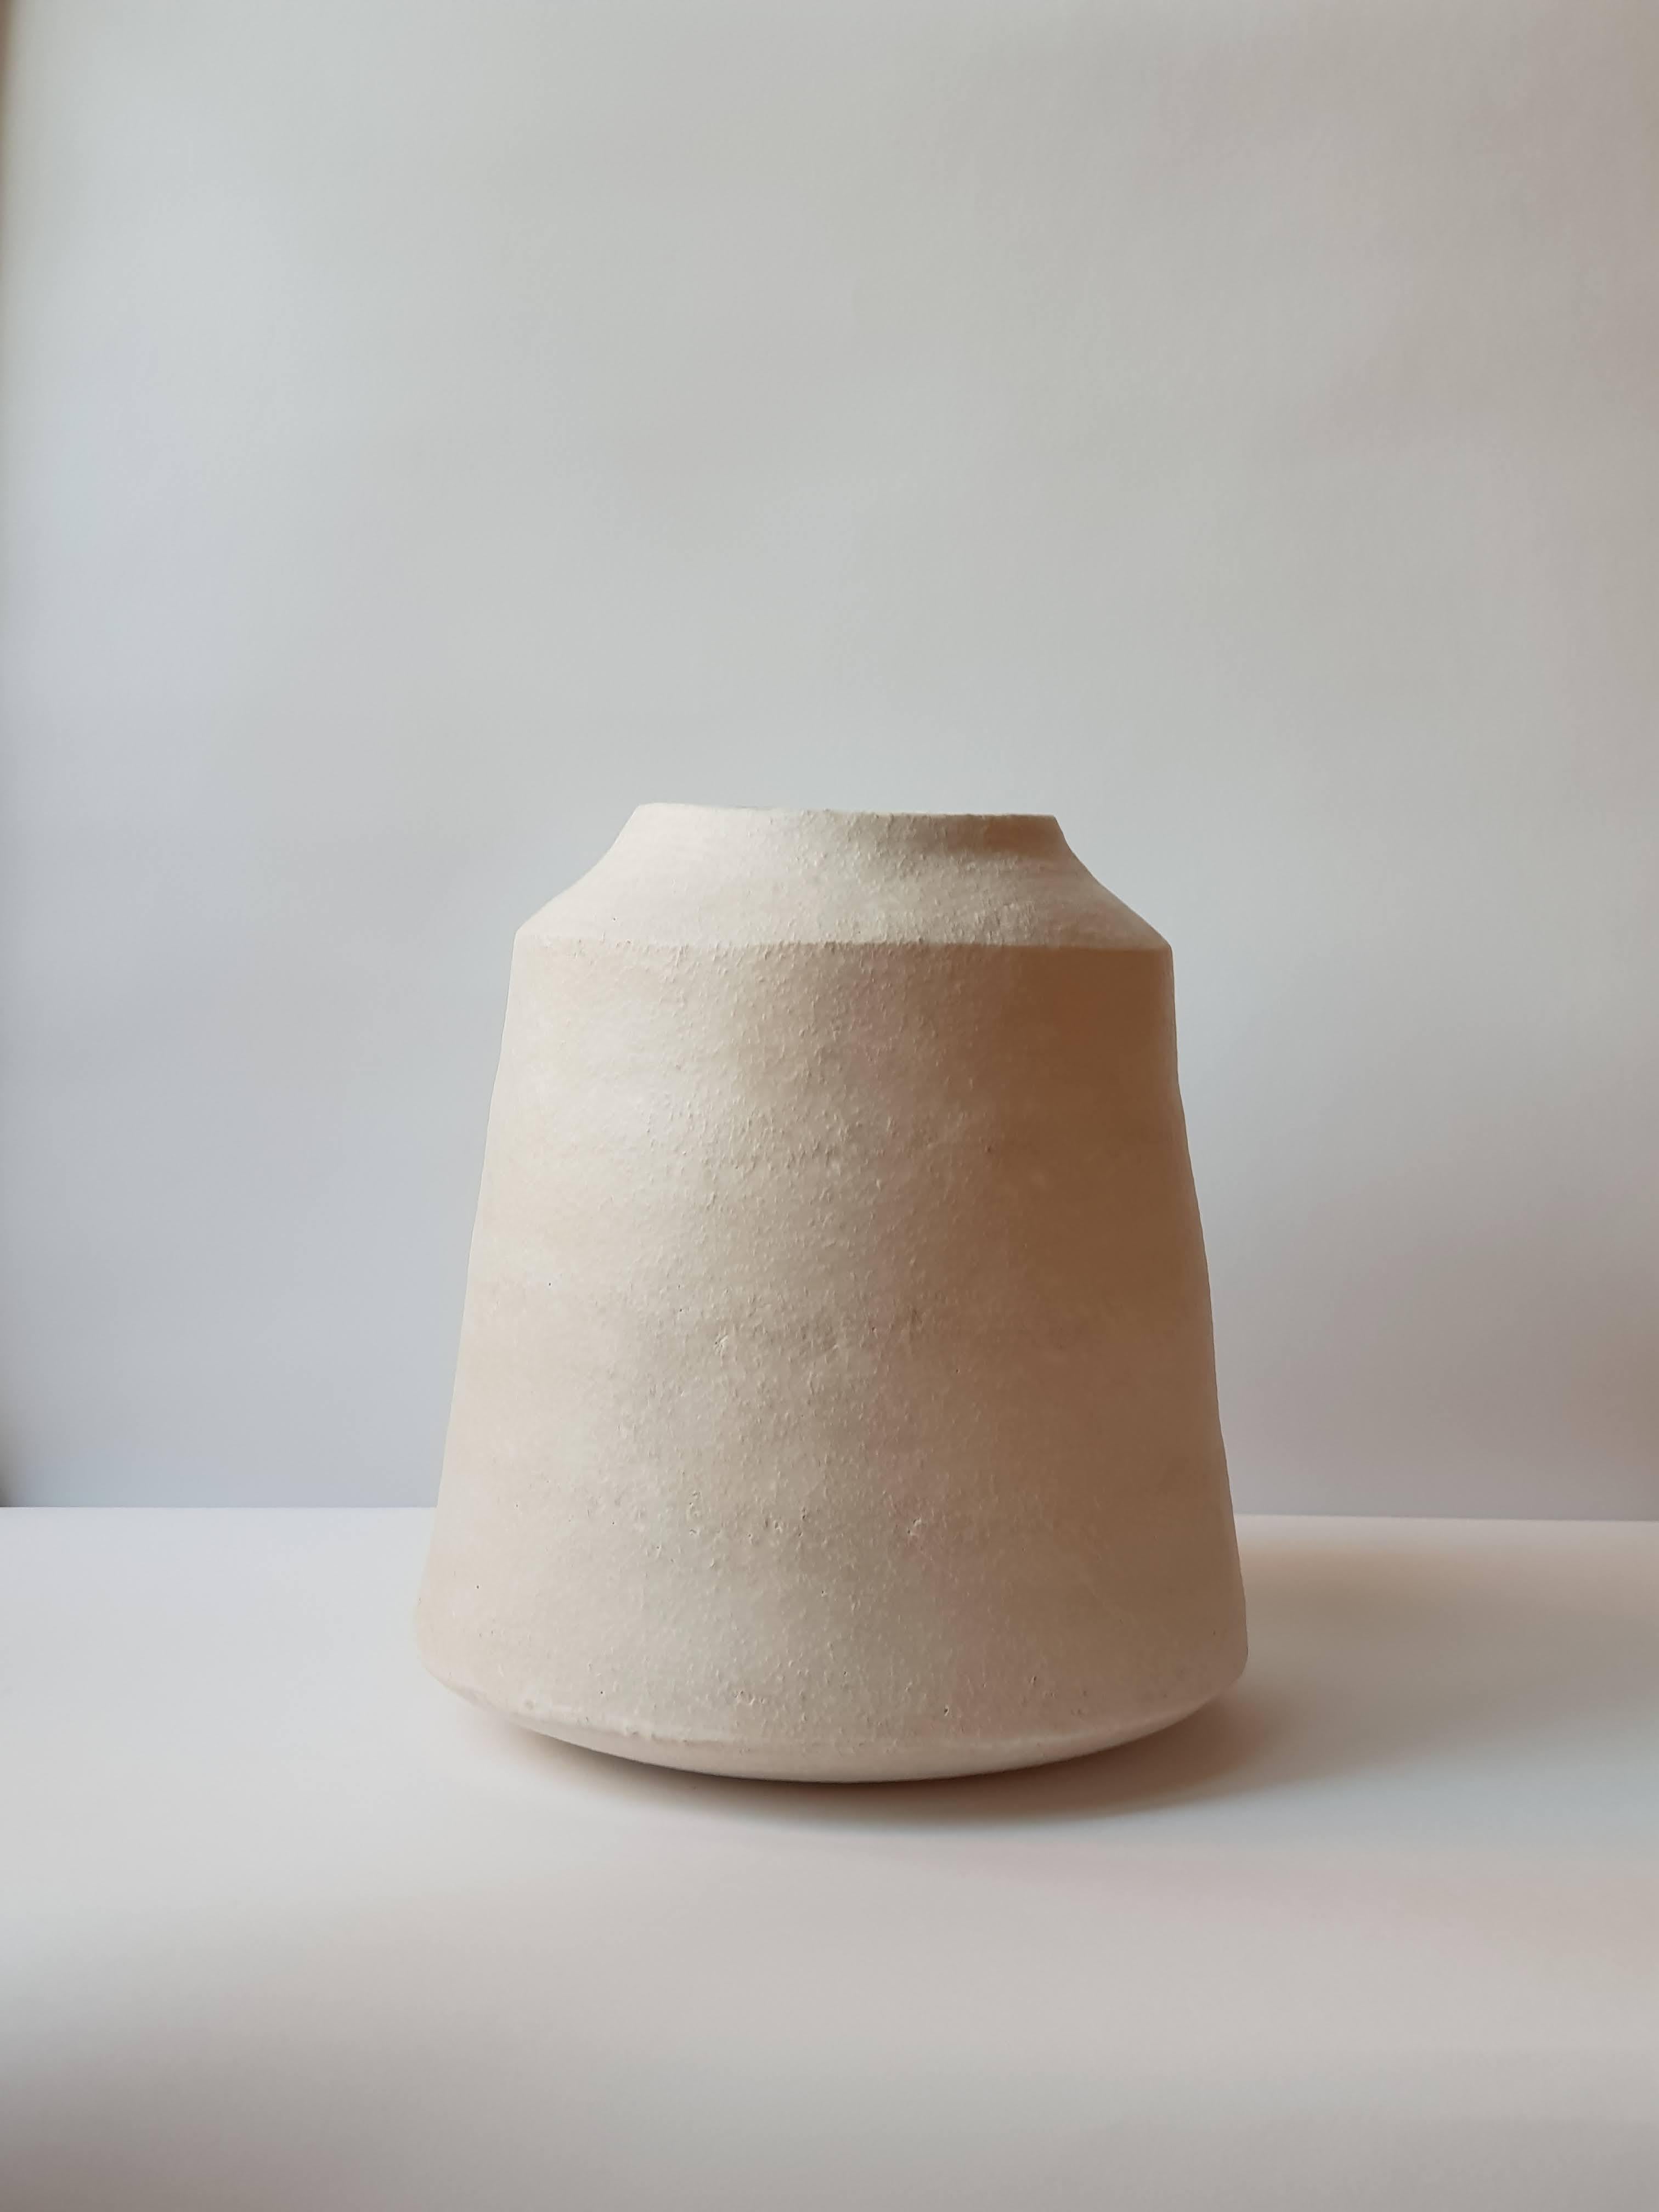 Other White Stoneware Kados Vase by Elena Vasilantonaki For Sale